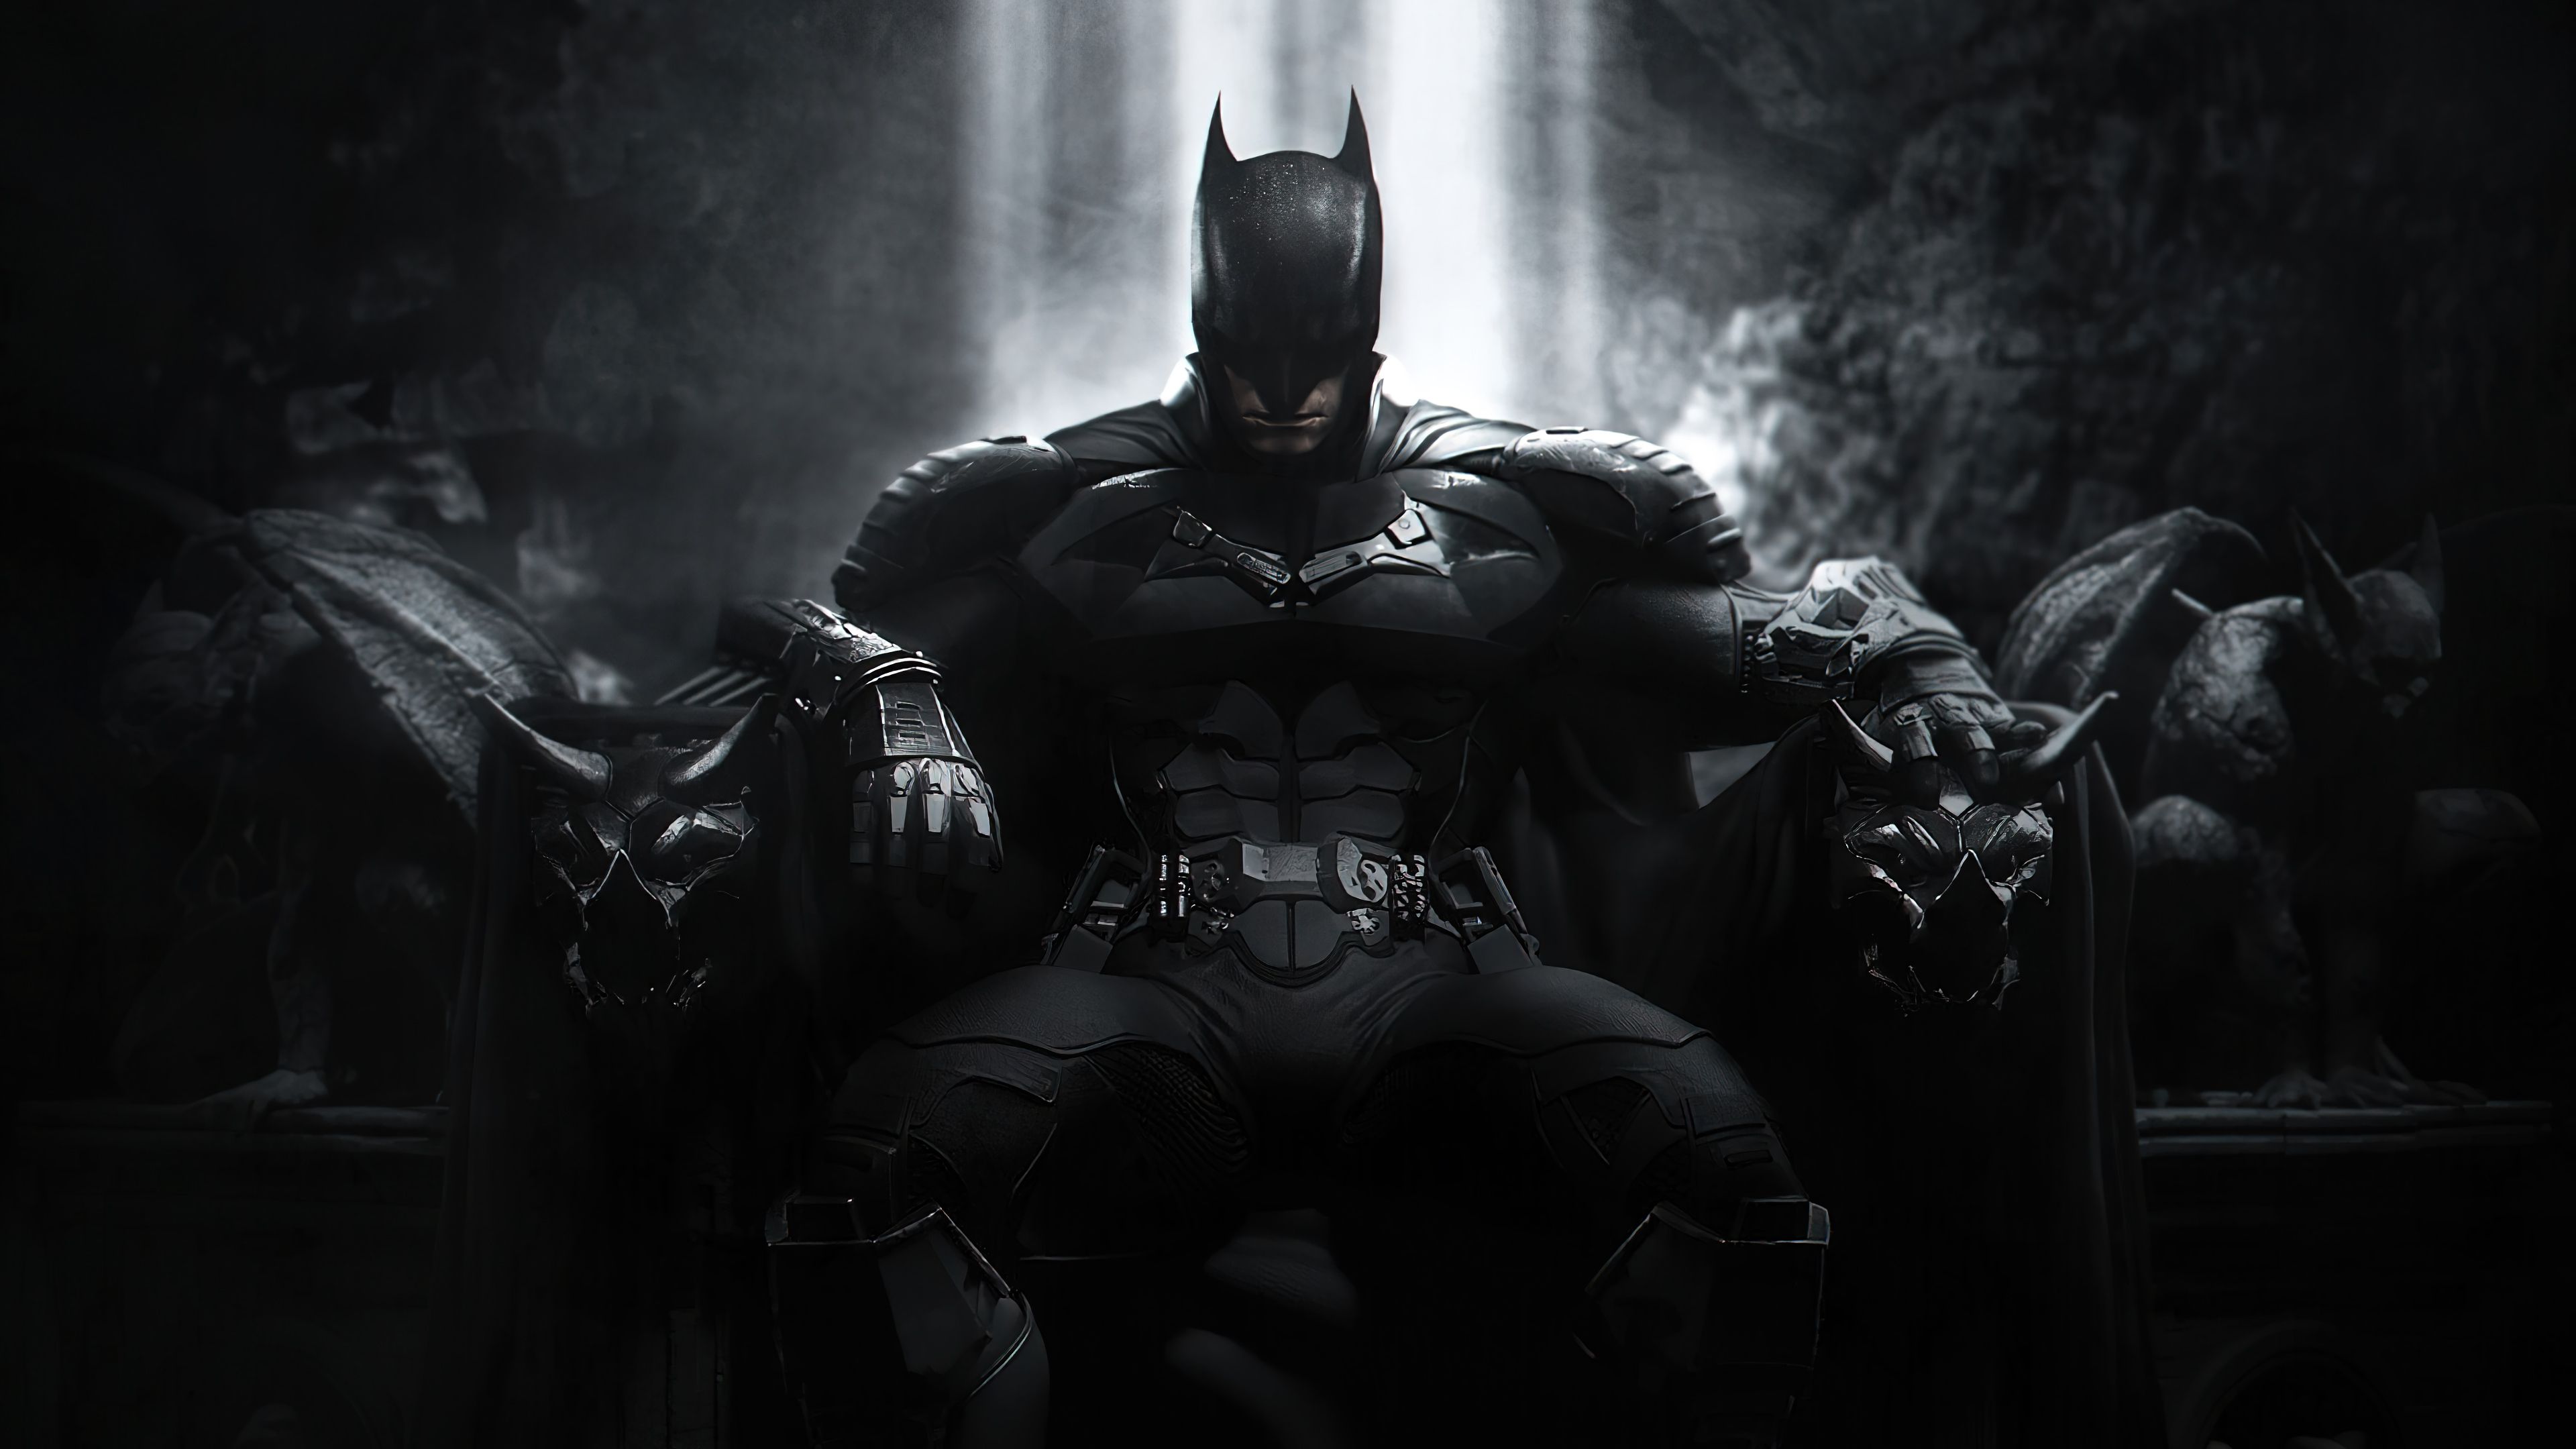 Comics Batman 4k Ultra HD Wallpaper